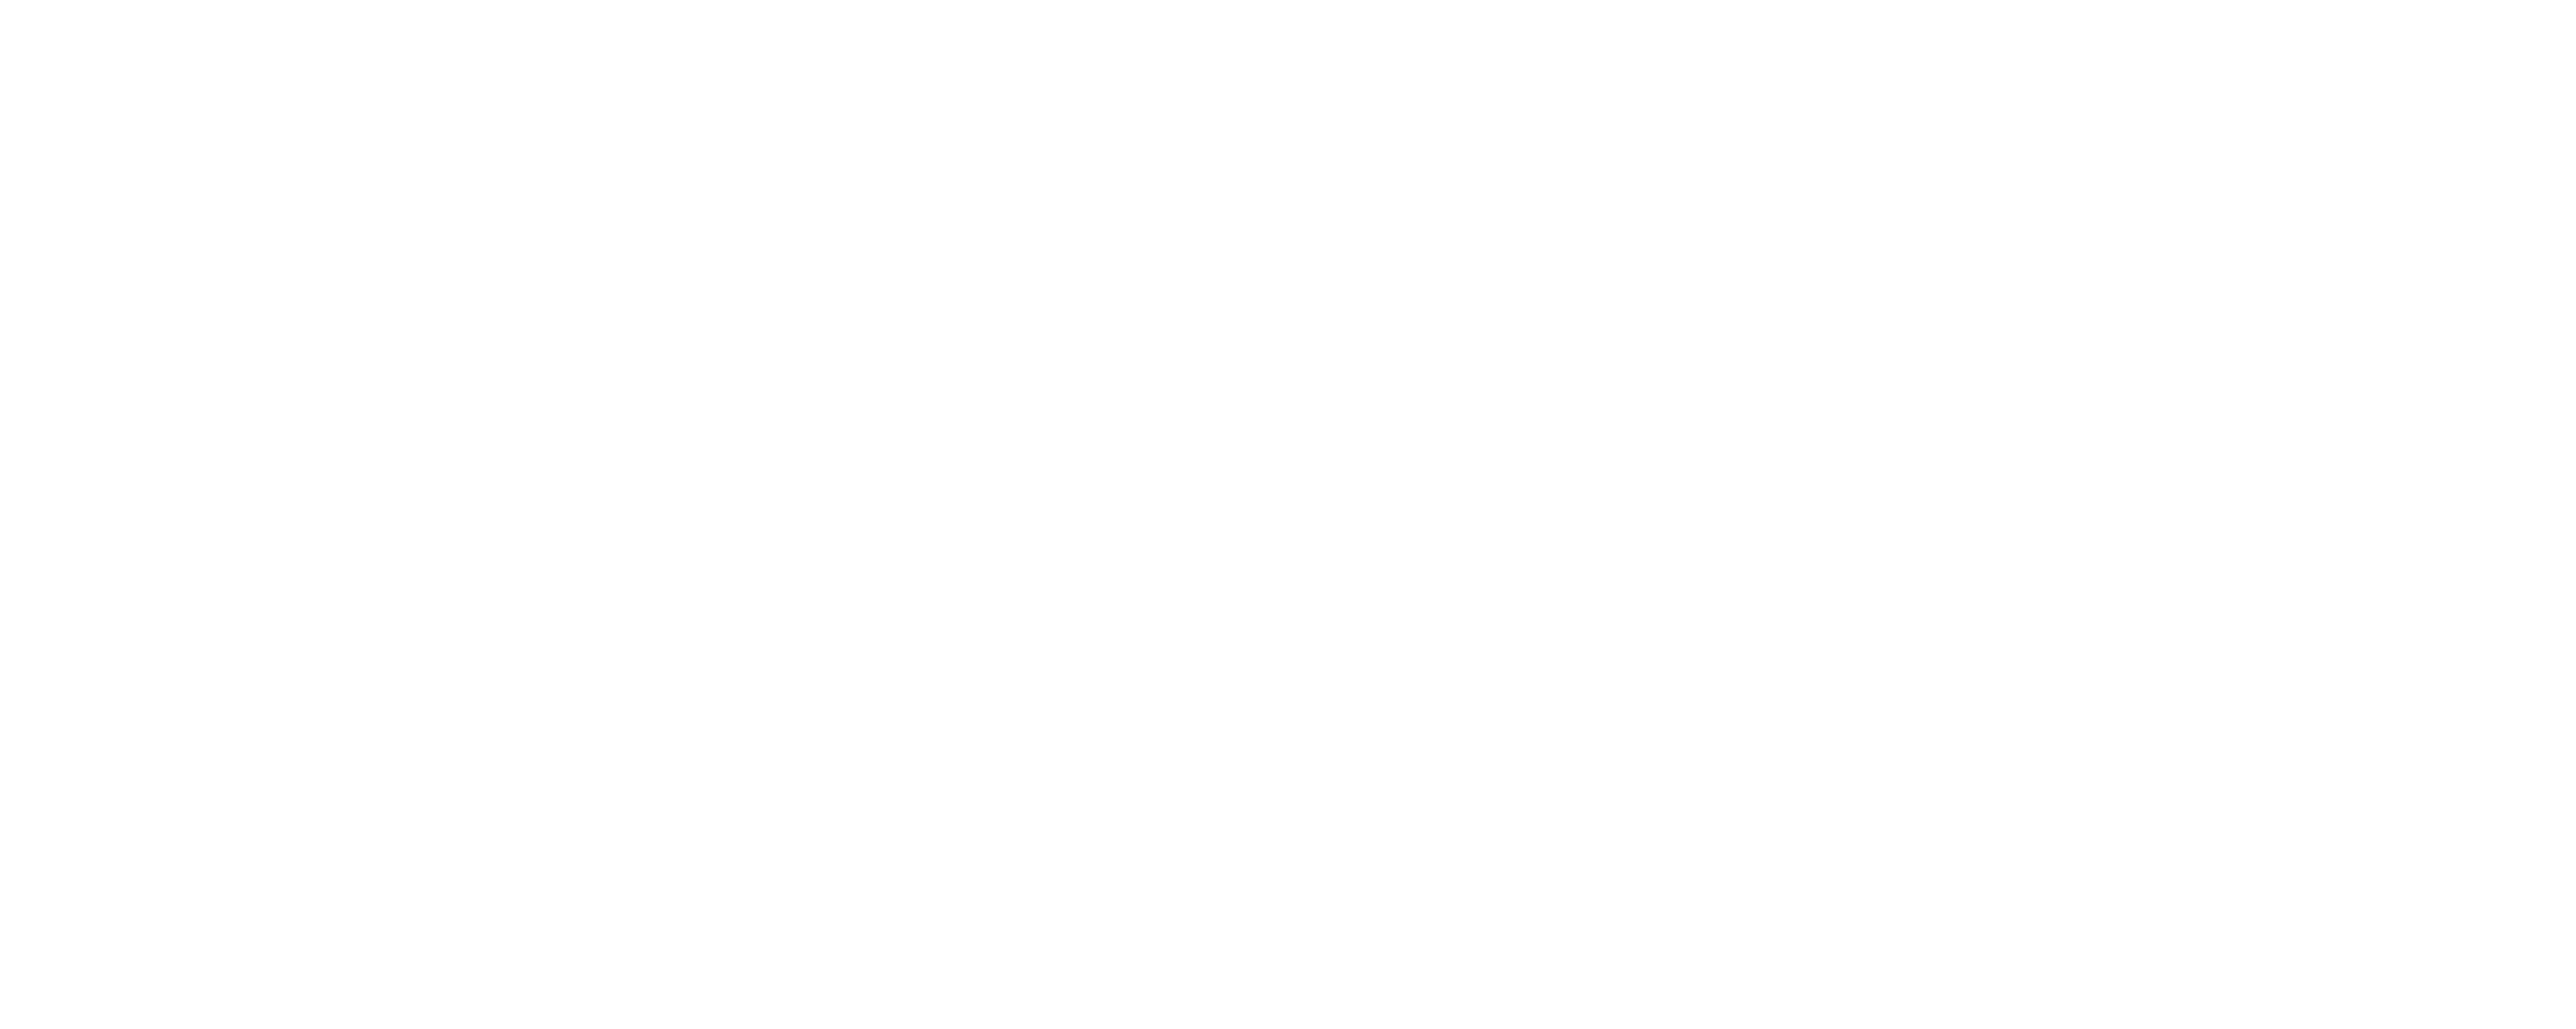 The Adventures of Priscilla, Queen of the Desert logo